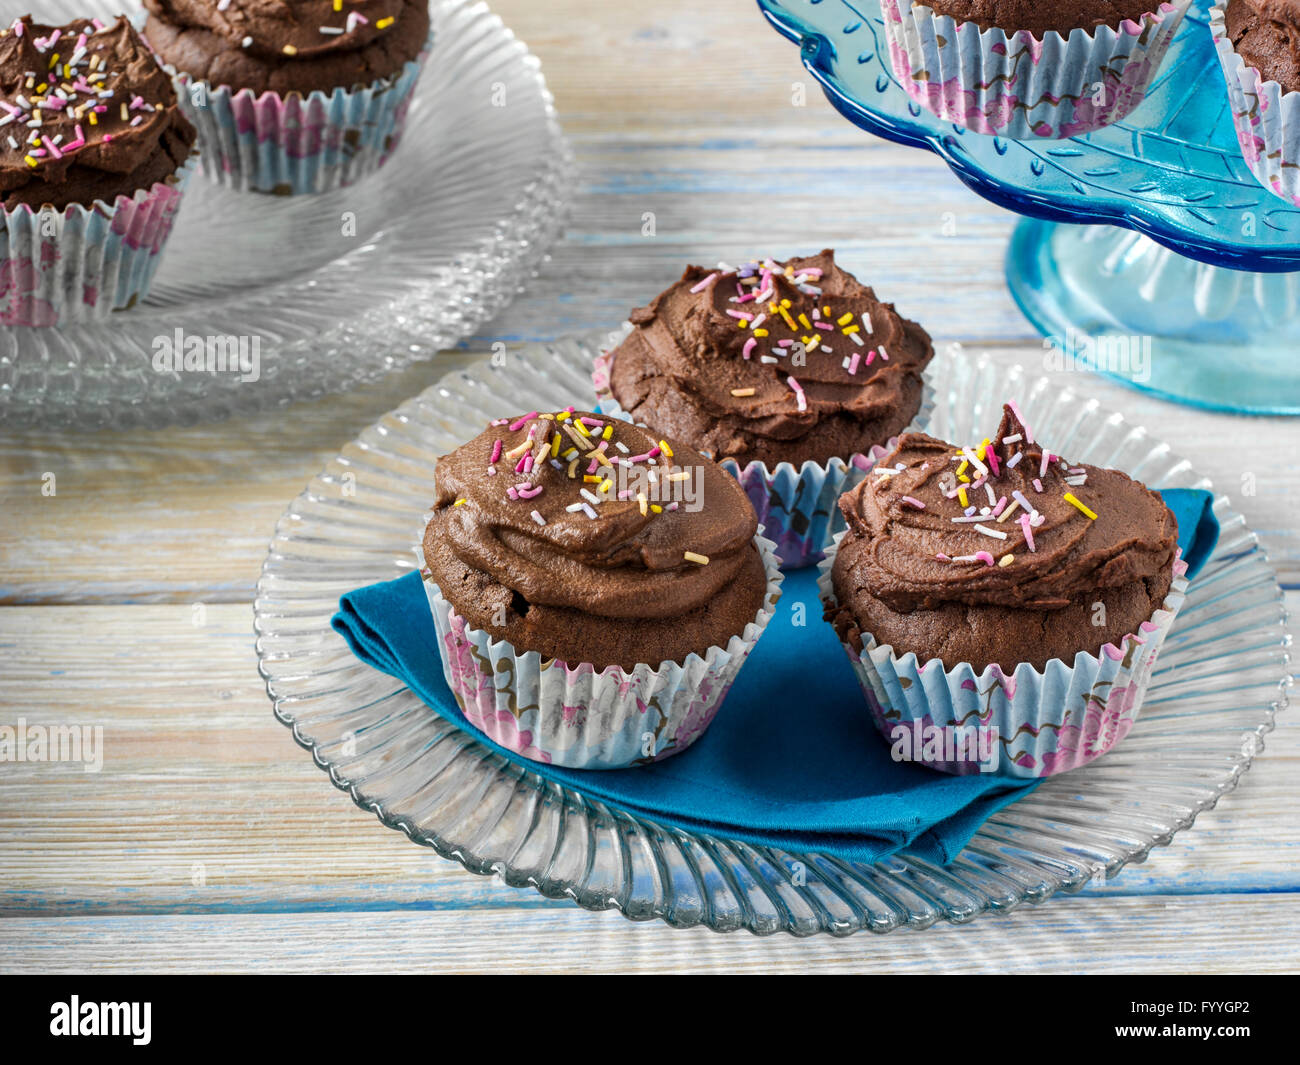 Vegan chocolate cupcakes Stock Photo